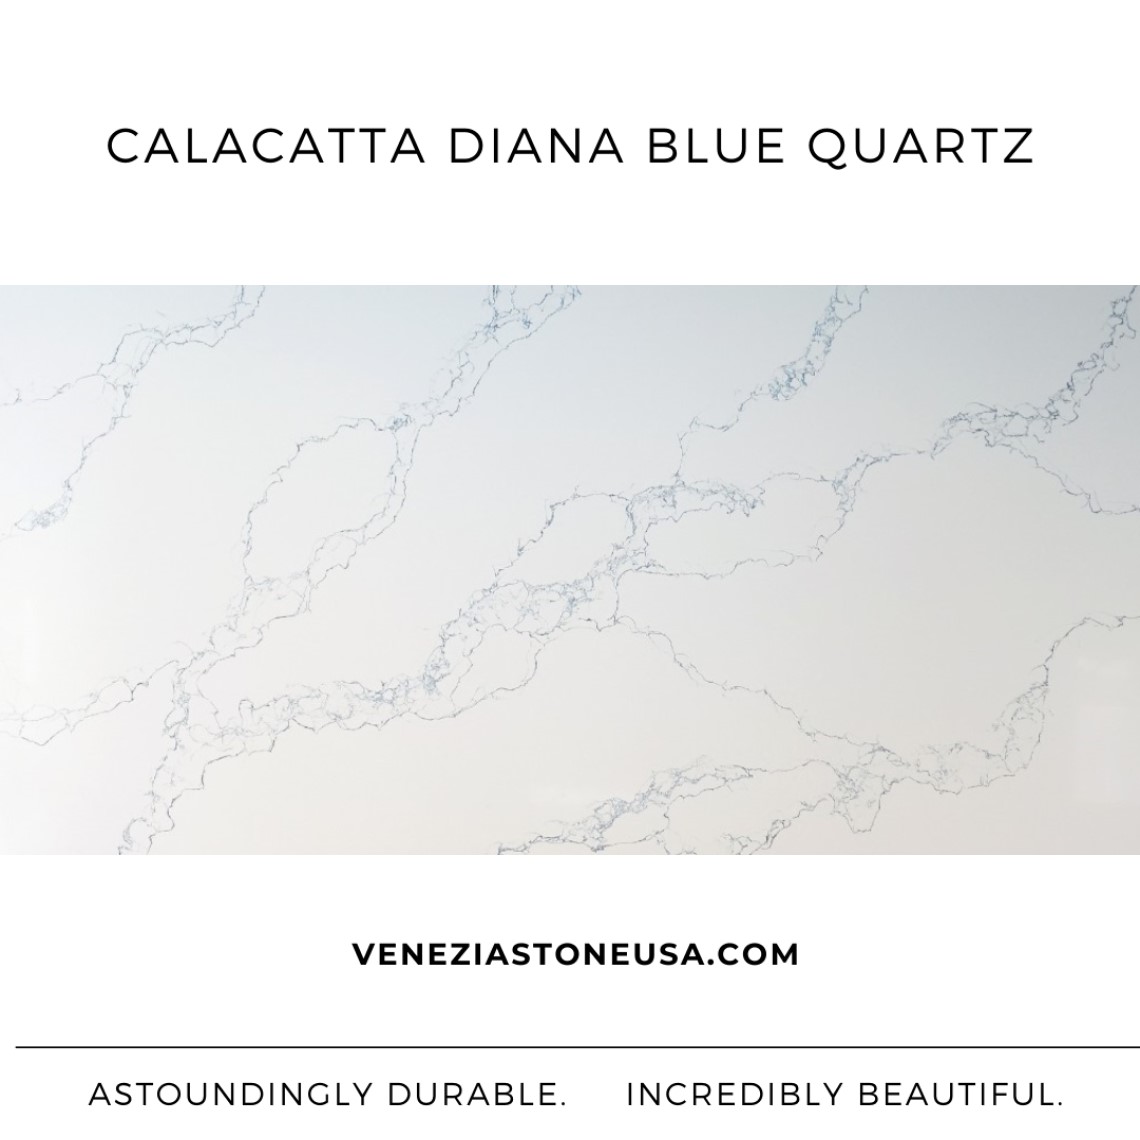 Calacatta Diana Blue Quartz